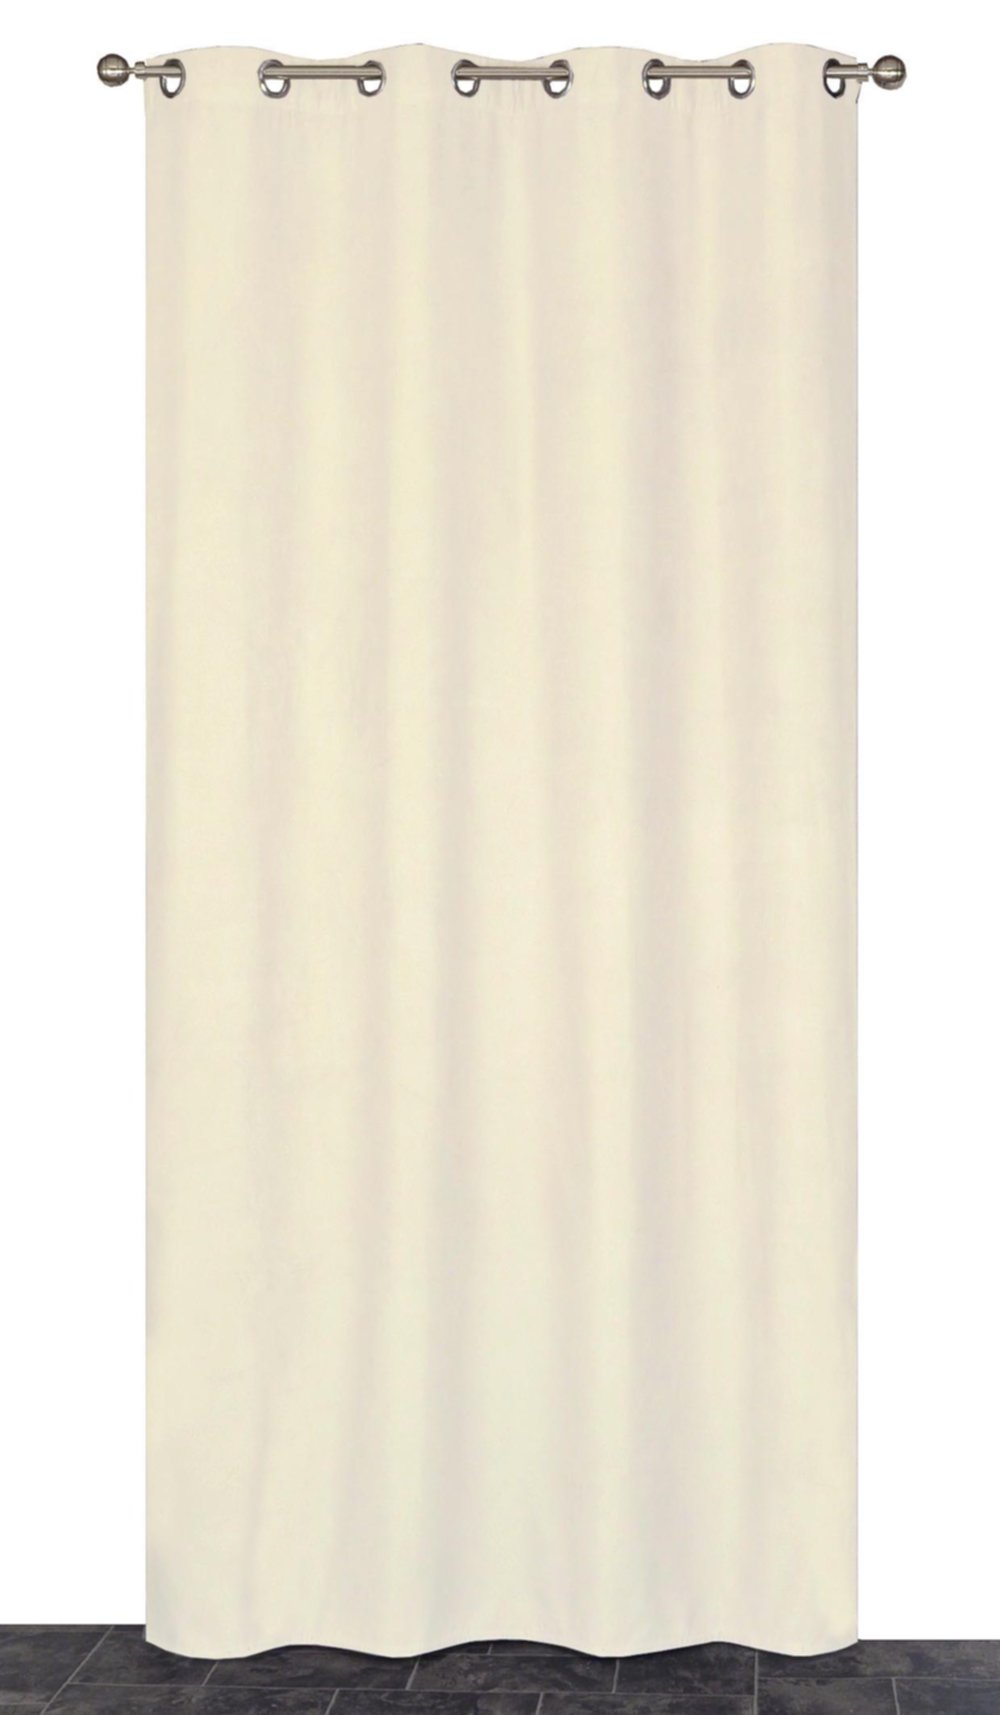 Rideau thermique beige 140x240cm - DYLREV